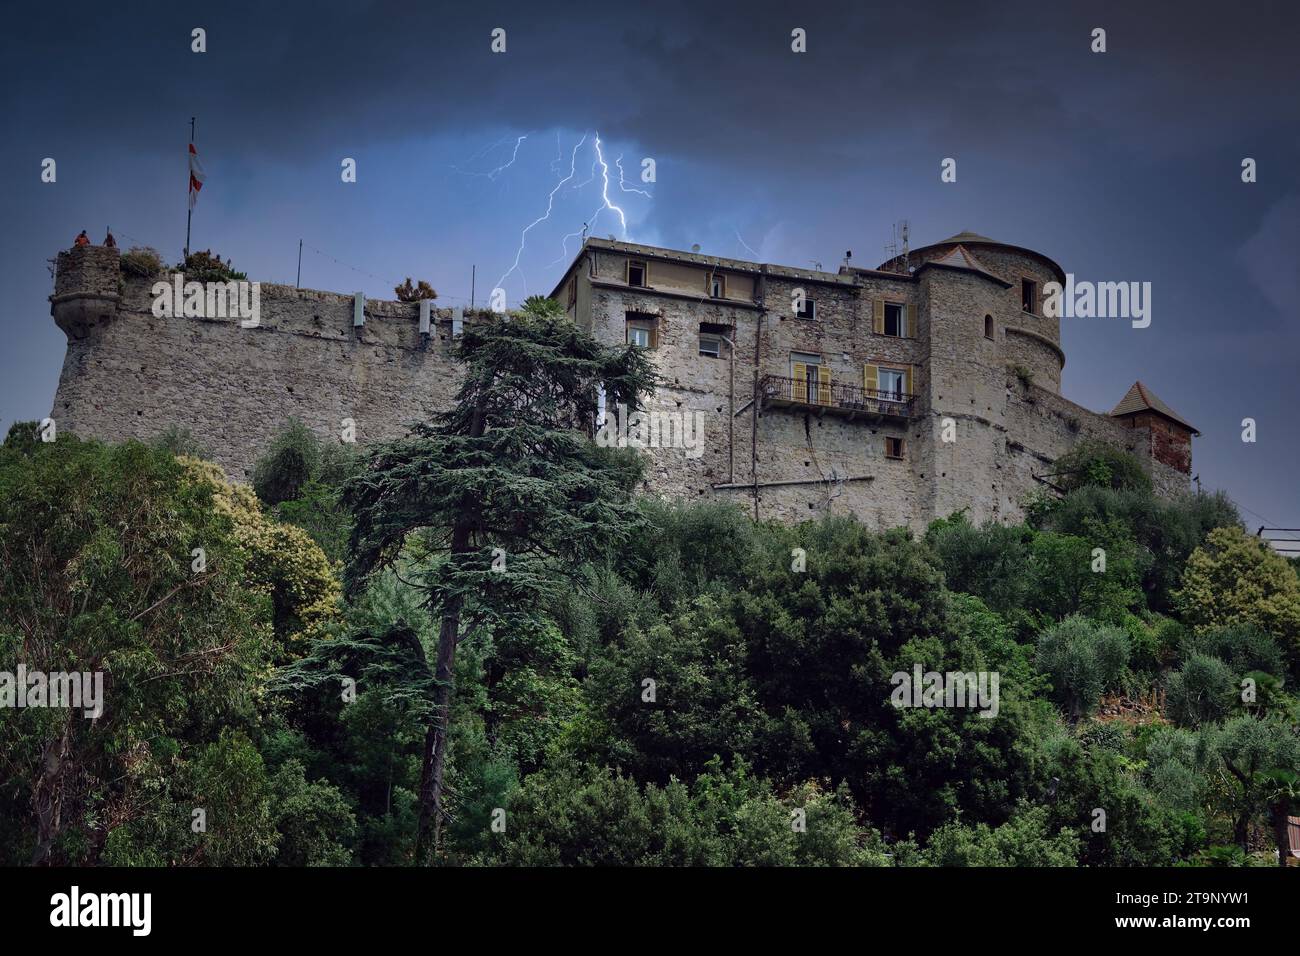 Le château brun a également appelé le château de San Giorgio ou château de Portofino lors d'une tempête estivale Banque D'Images